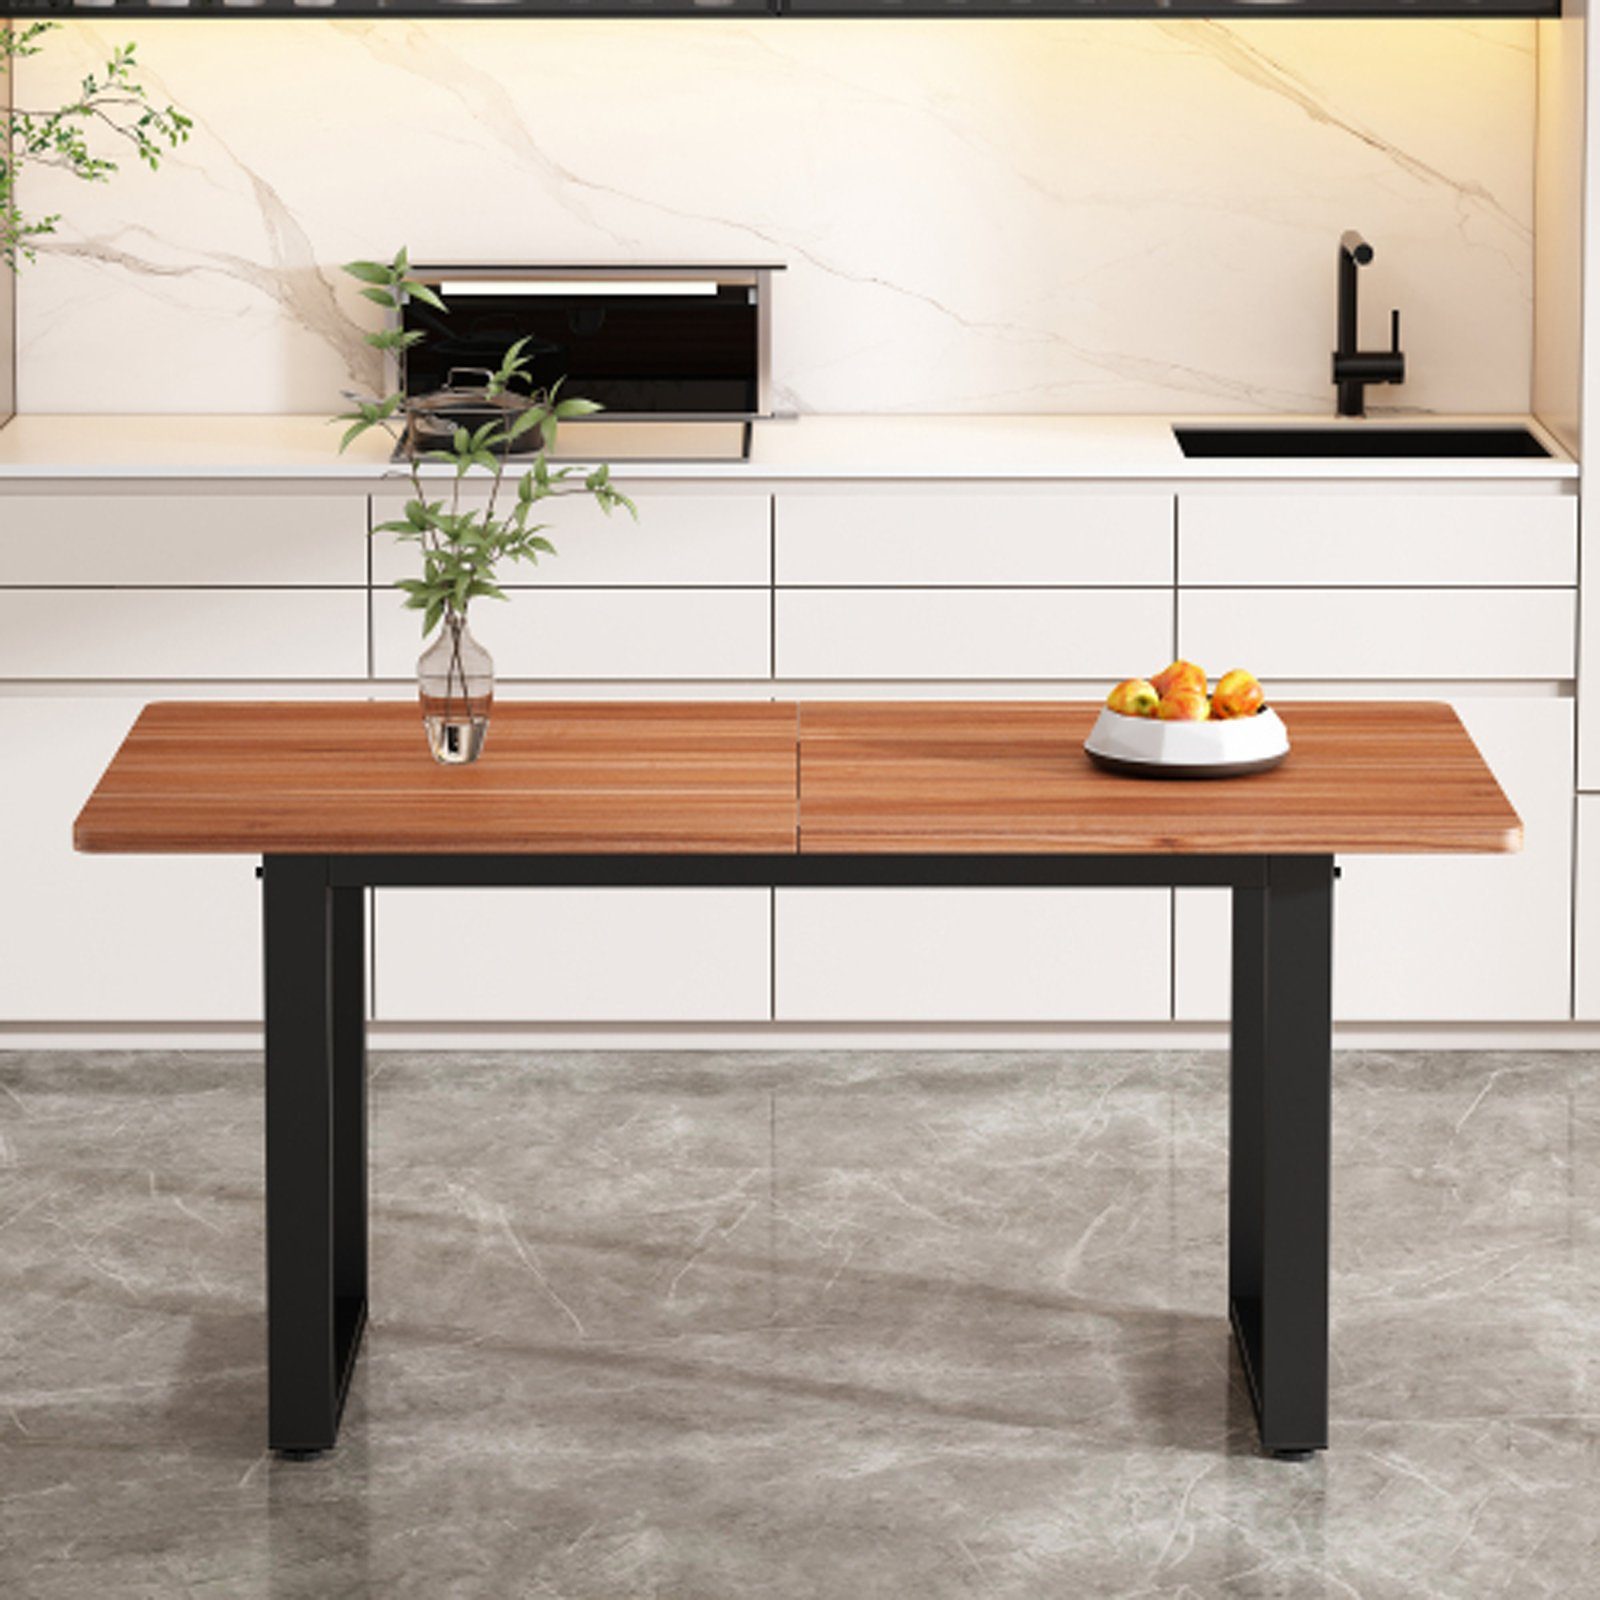 SEEZSSA Esstisch Industriestil,esstisch holz, Kaffee-Freizeittisch 140x70cm (Esszimmerestuhl), ausziehbarer Tisch Küchenstuhl aus Hochwertigem Holz und Stahl Braun